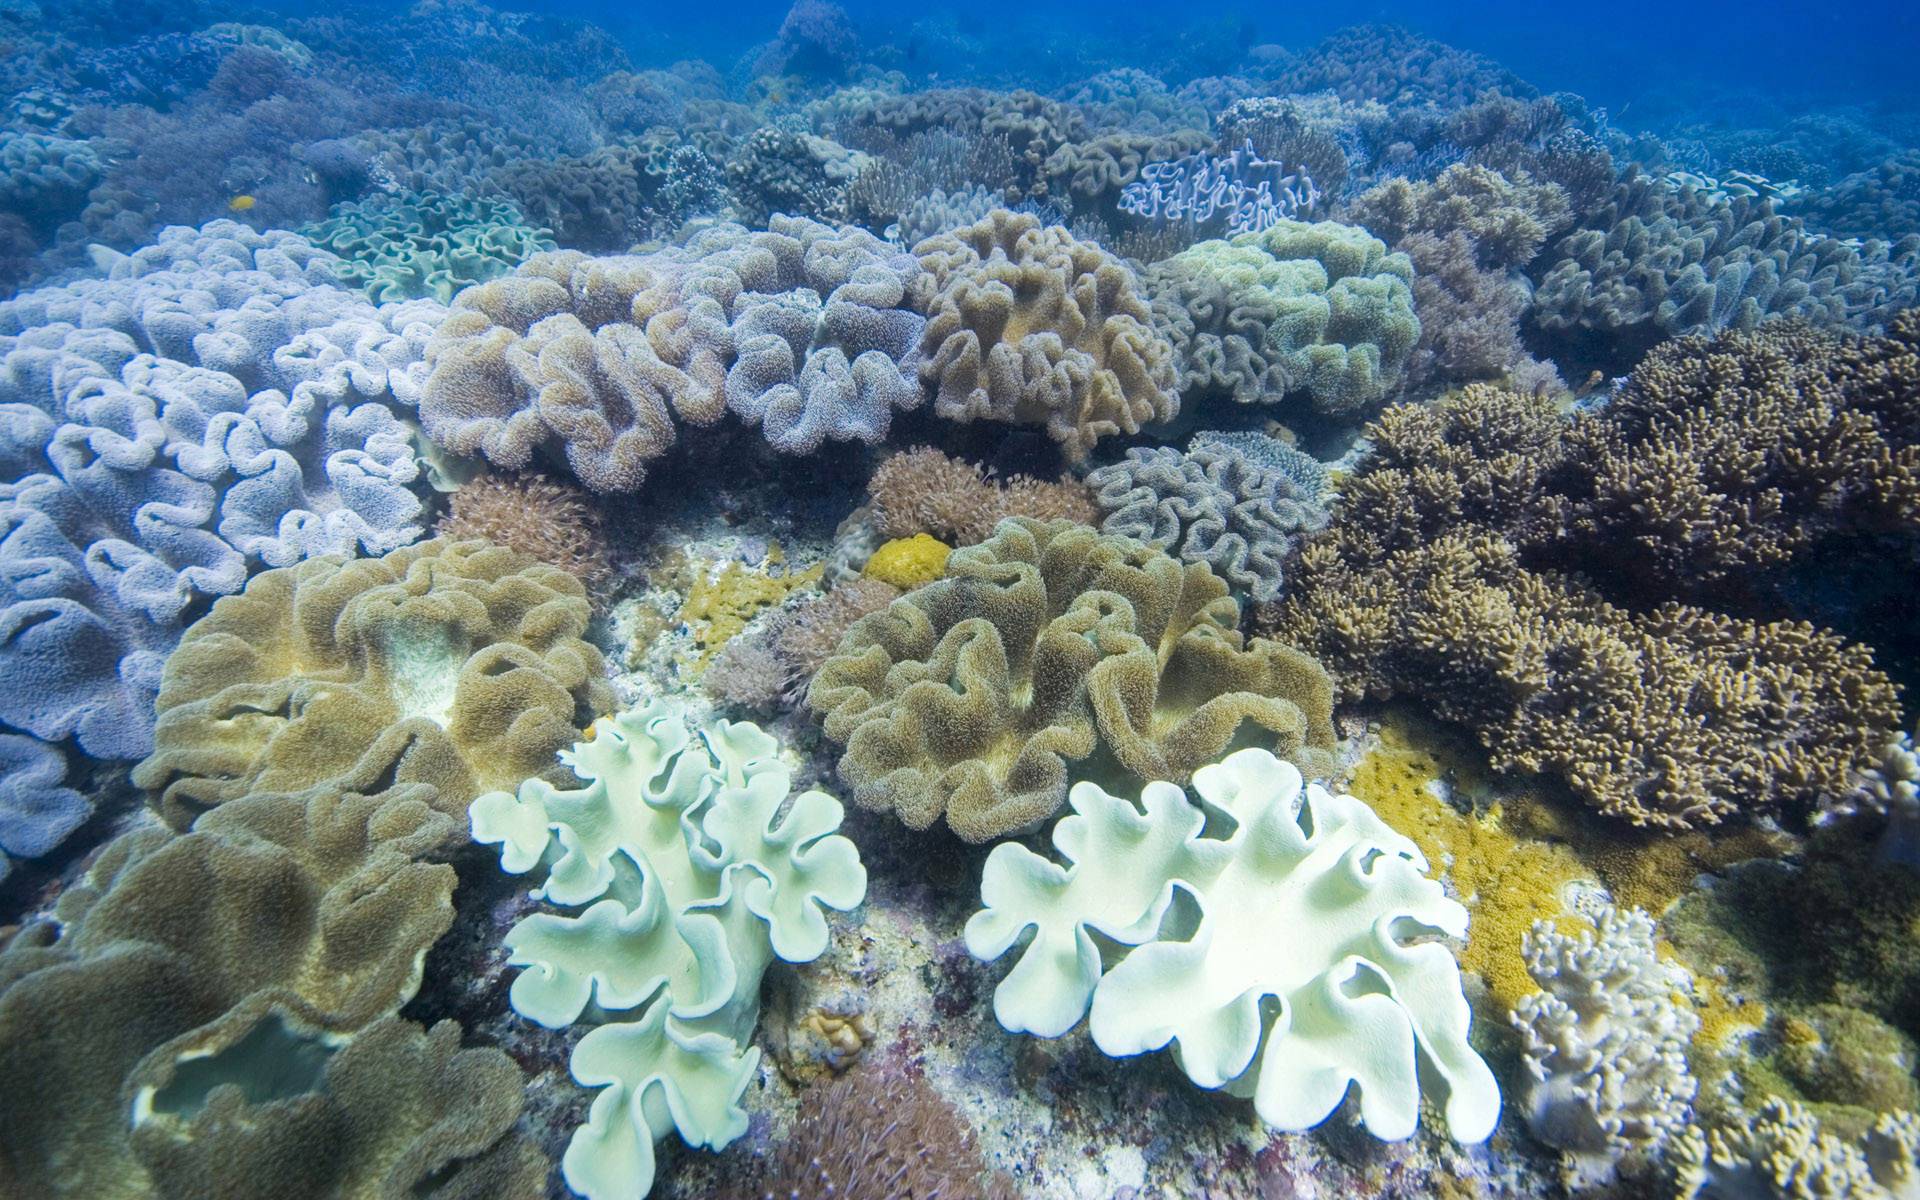 unter dem meer tapete,riff,korallenriff,koralle,meeresbiologie,unter wasser